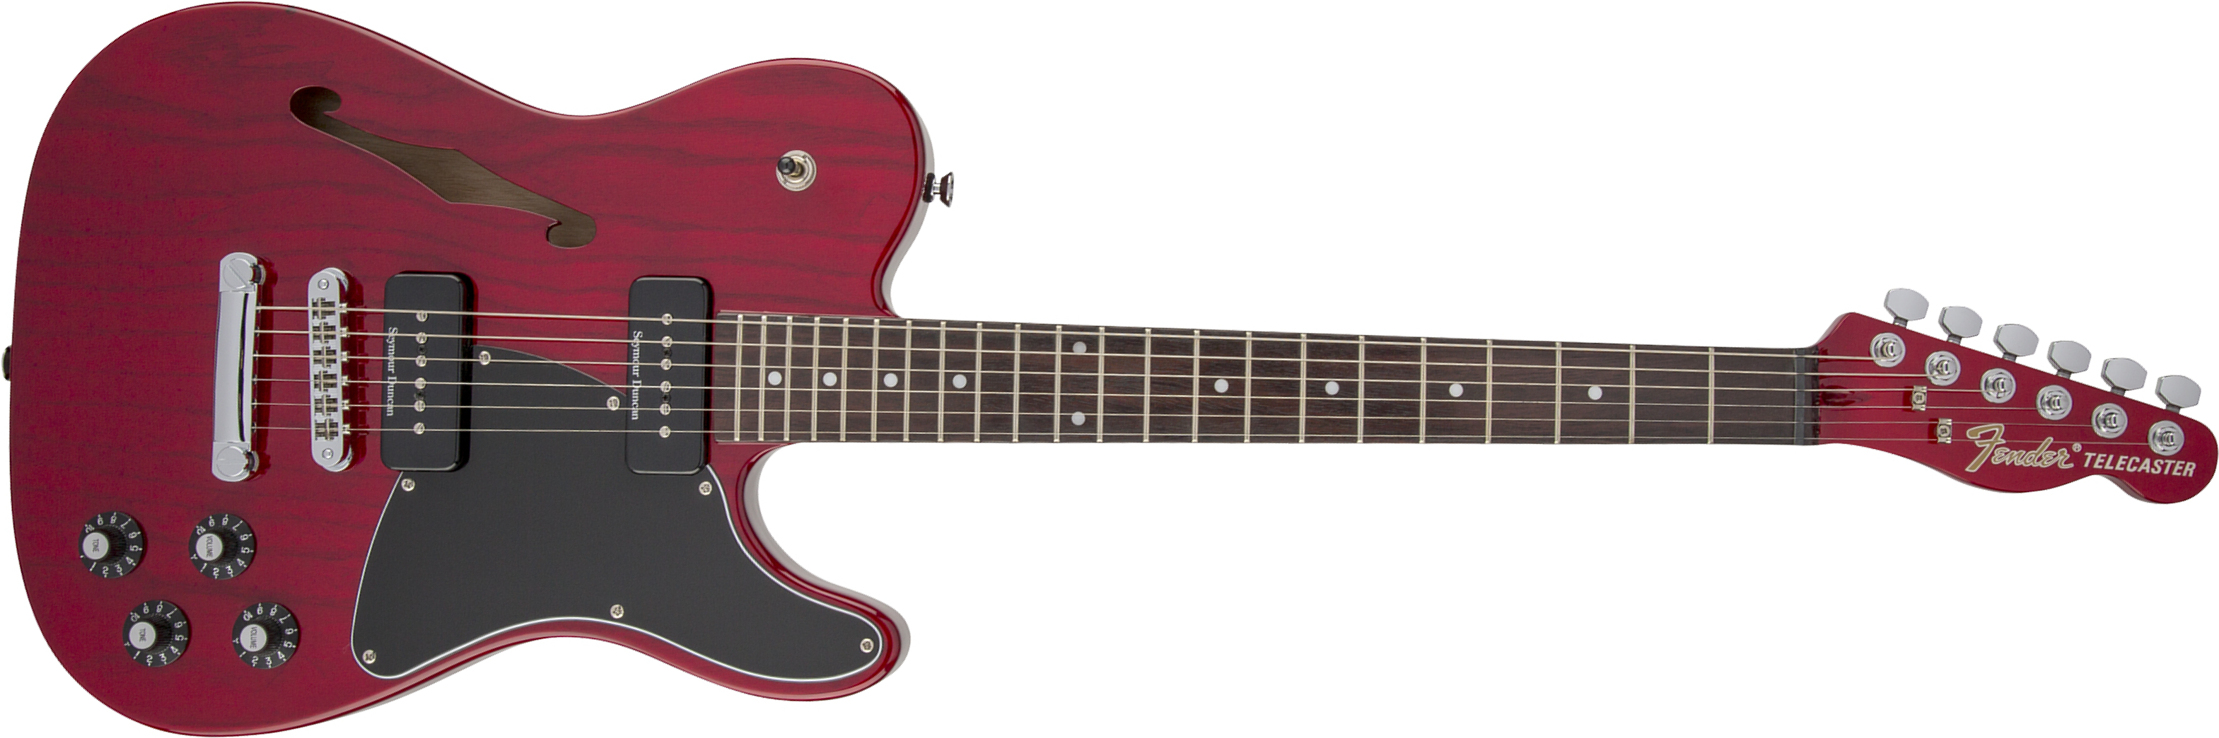 Fender Jim Adkins Tele Ja-90 Mex Signature 2p90 Lau - Crimson Red Transparent - Guitare Électrique Forme Tel - Main picture